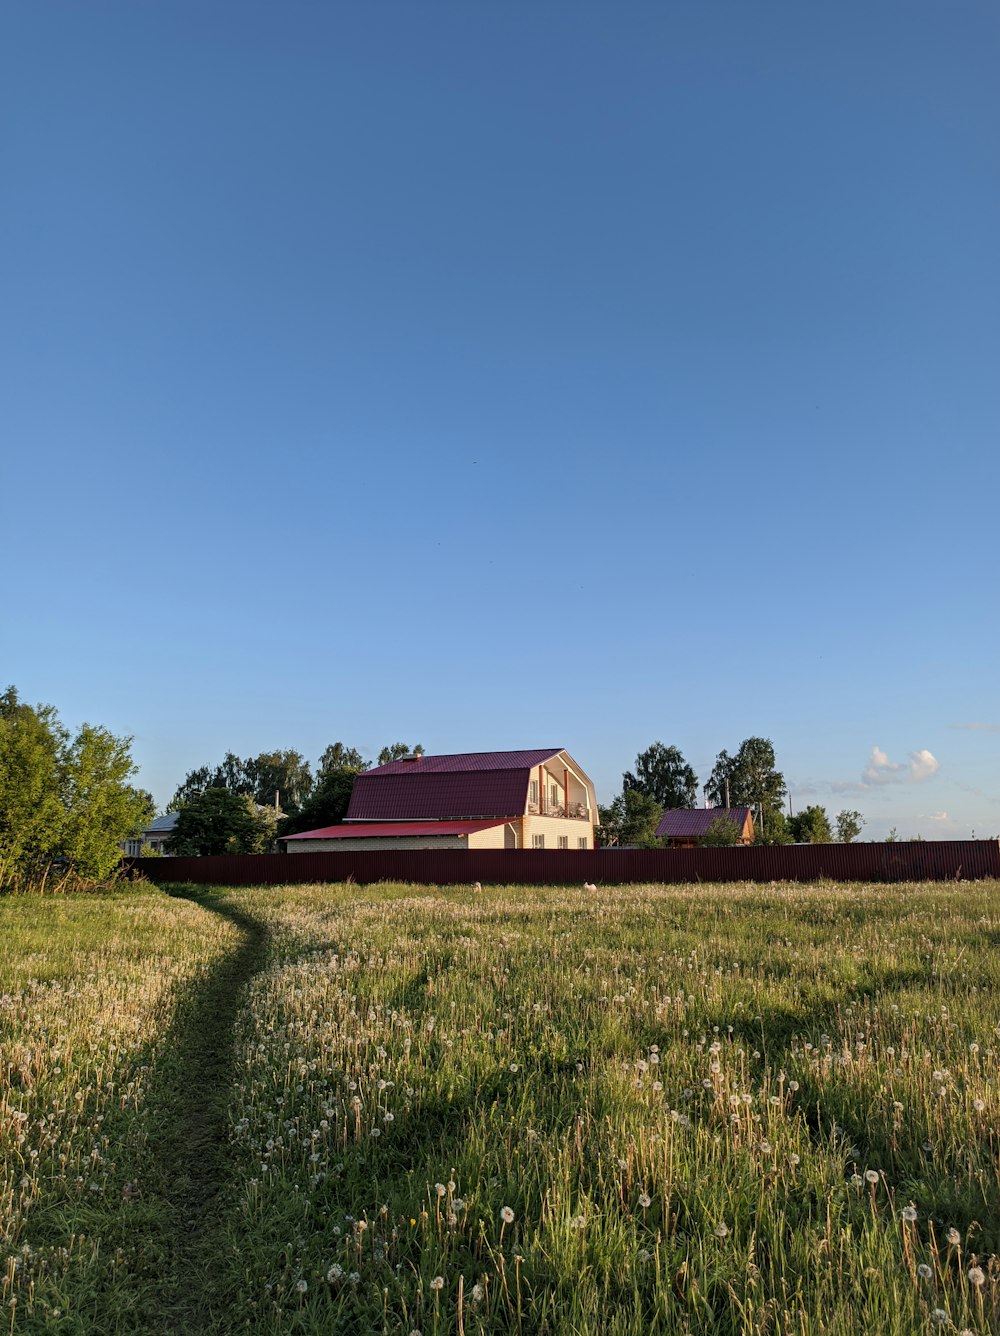 maison en bois rouge sur le champ d’herbe verte sous le ciel bleu pendant la journée